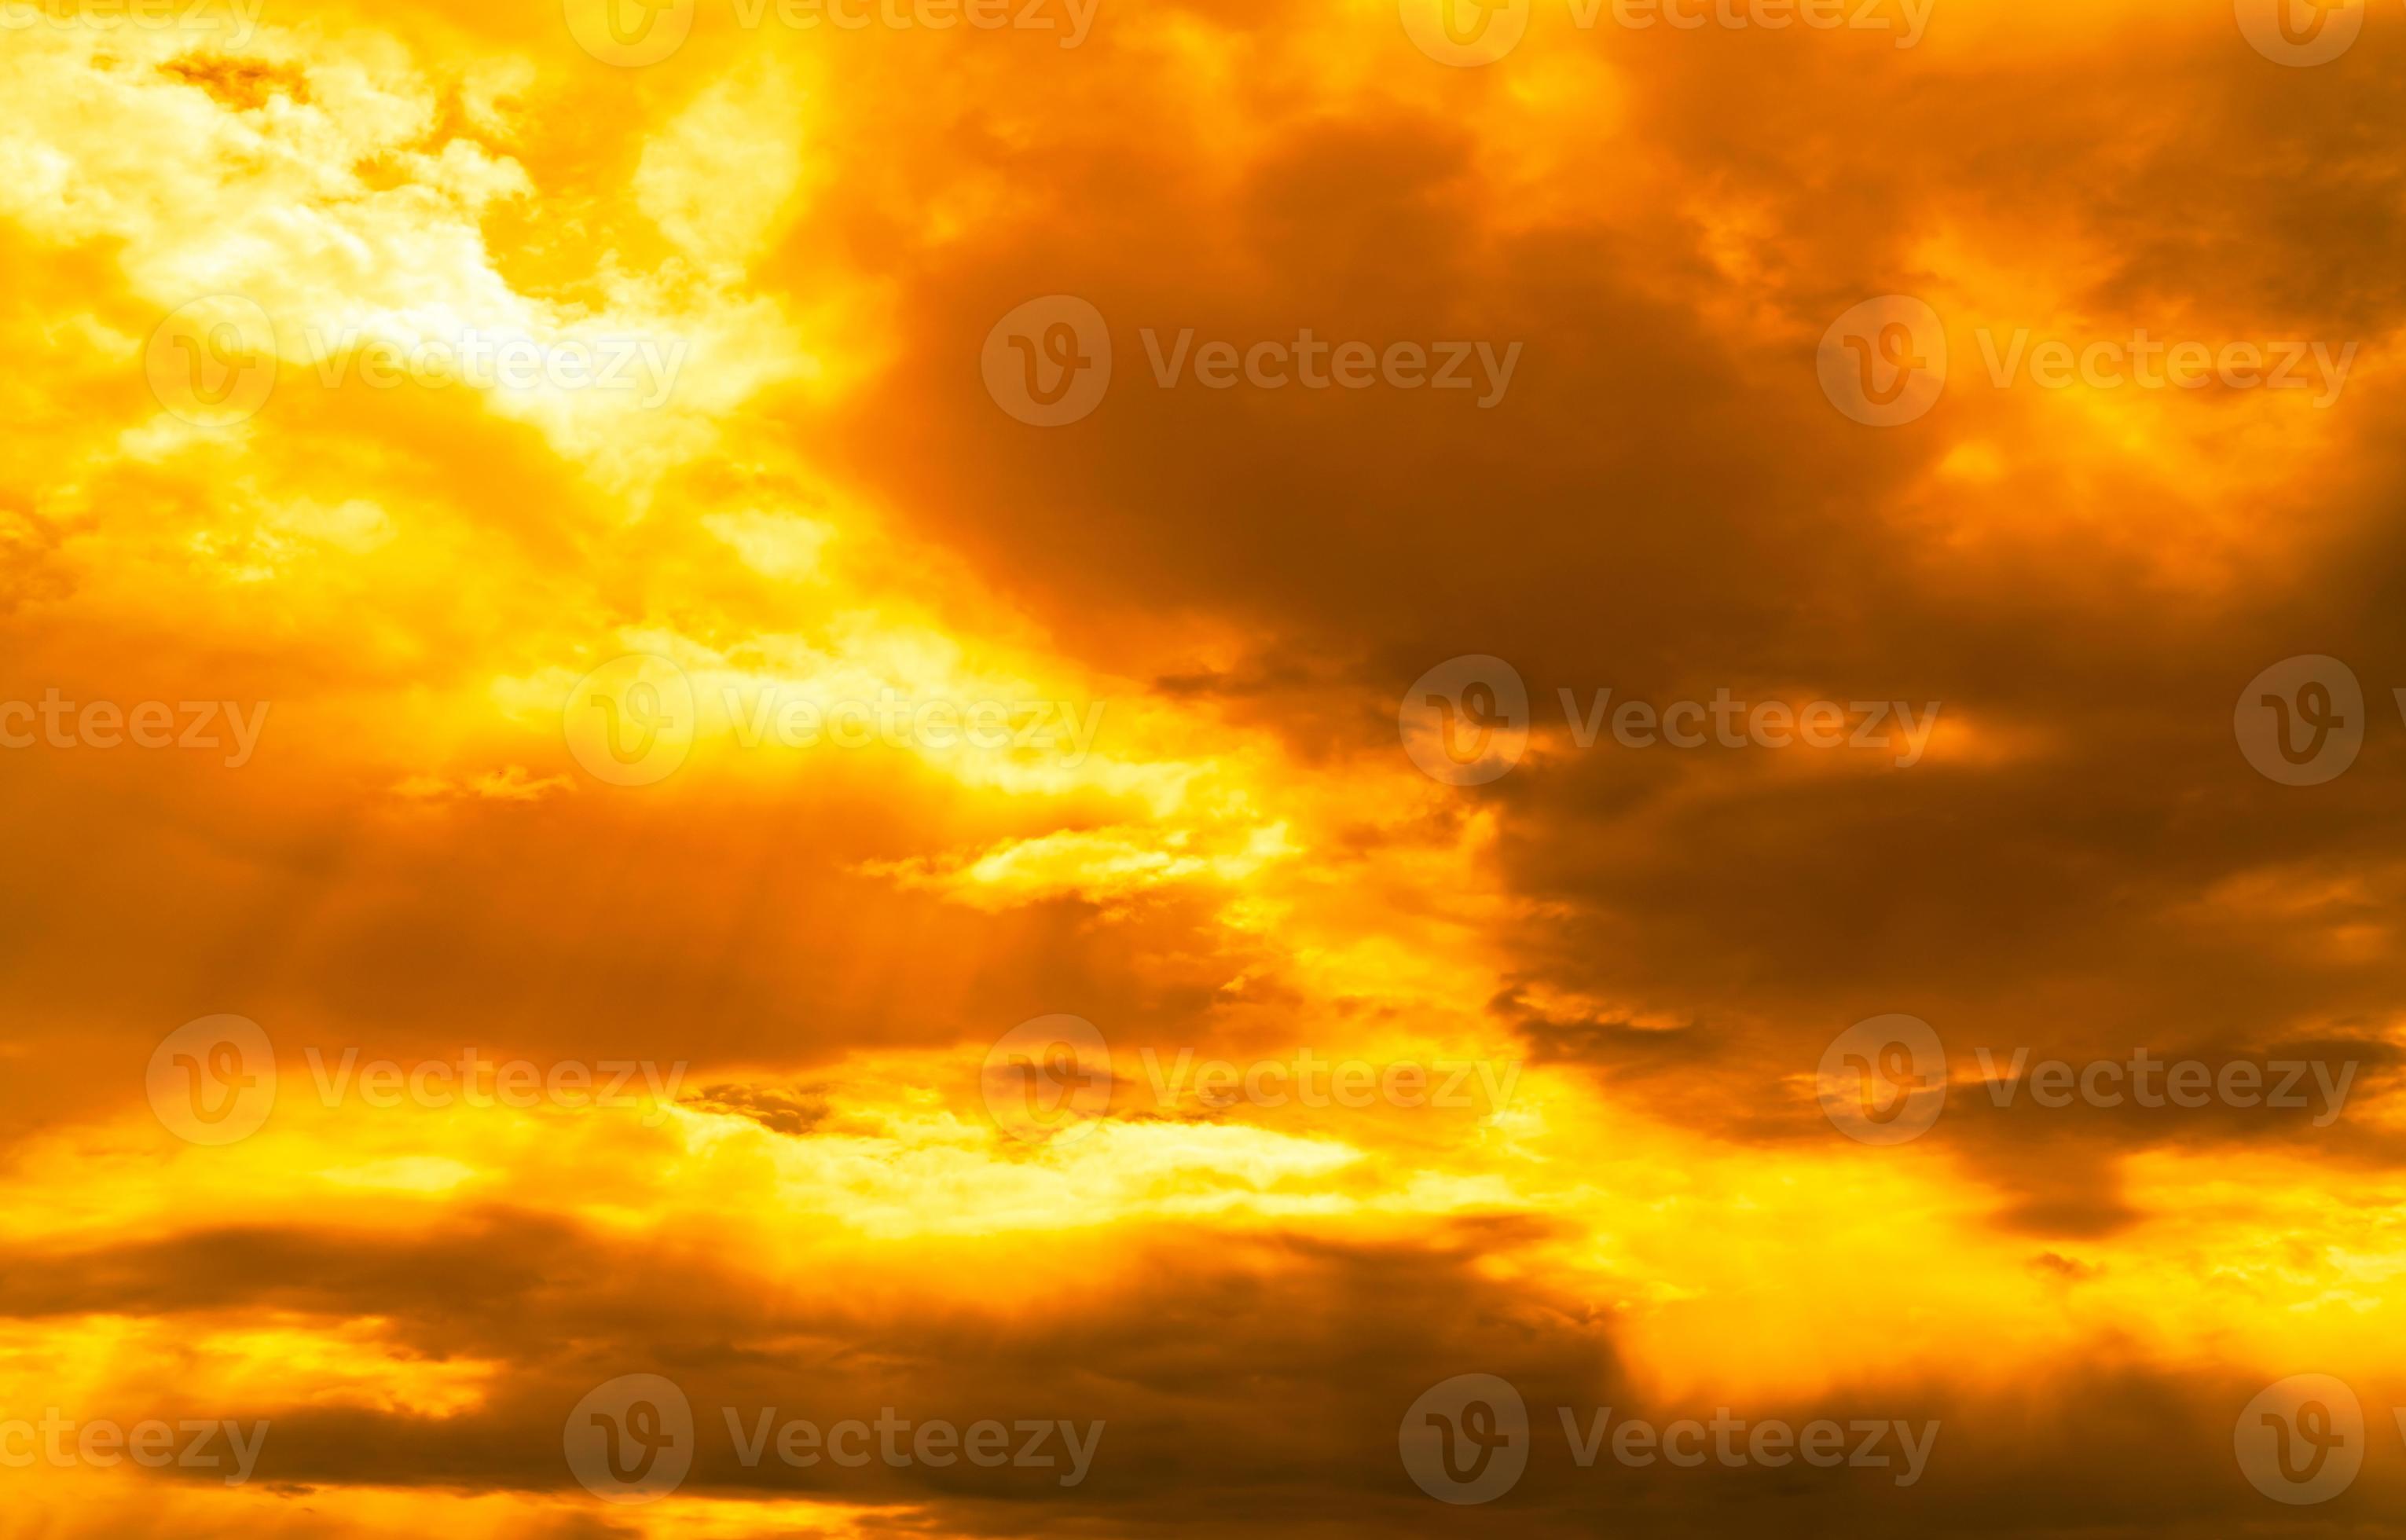 Bầu trời vàng óng ánh (Golden Cloudy Sky): Hãy cùng chiêm ngưỡng bầu trời vàng óng ánh sau cơn mưa, tạo nên một bức ảnh tuyệt đẹp và đầy nghị lực. Với những đám mây vàng óng ánh nhưng rất mềm mại, bạn sẽ cảm thấy niềm vui và hy vọng rực sáng tỏa ra từ hình ảnh này.